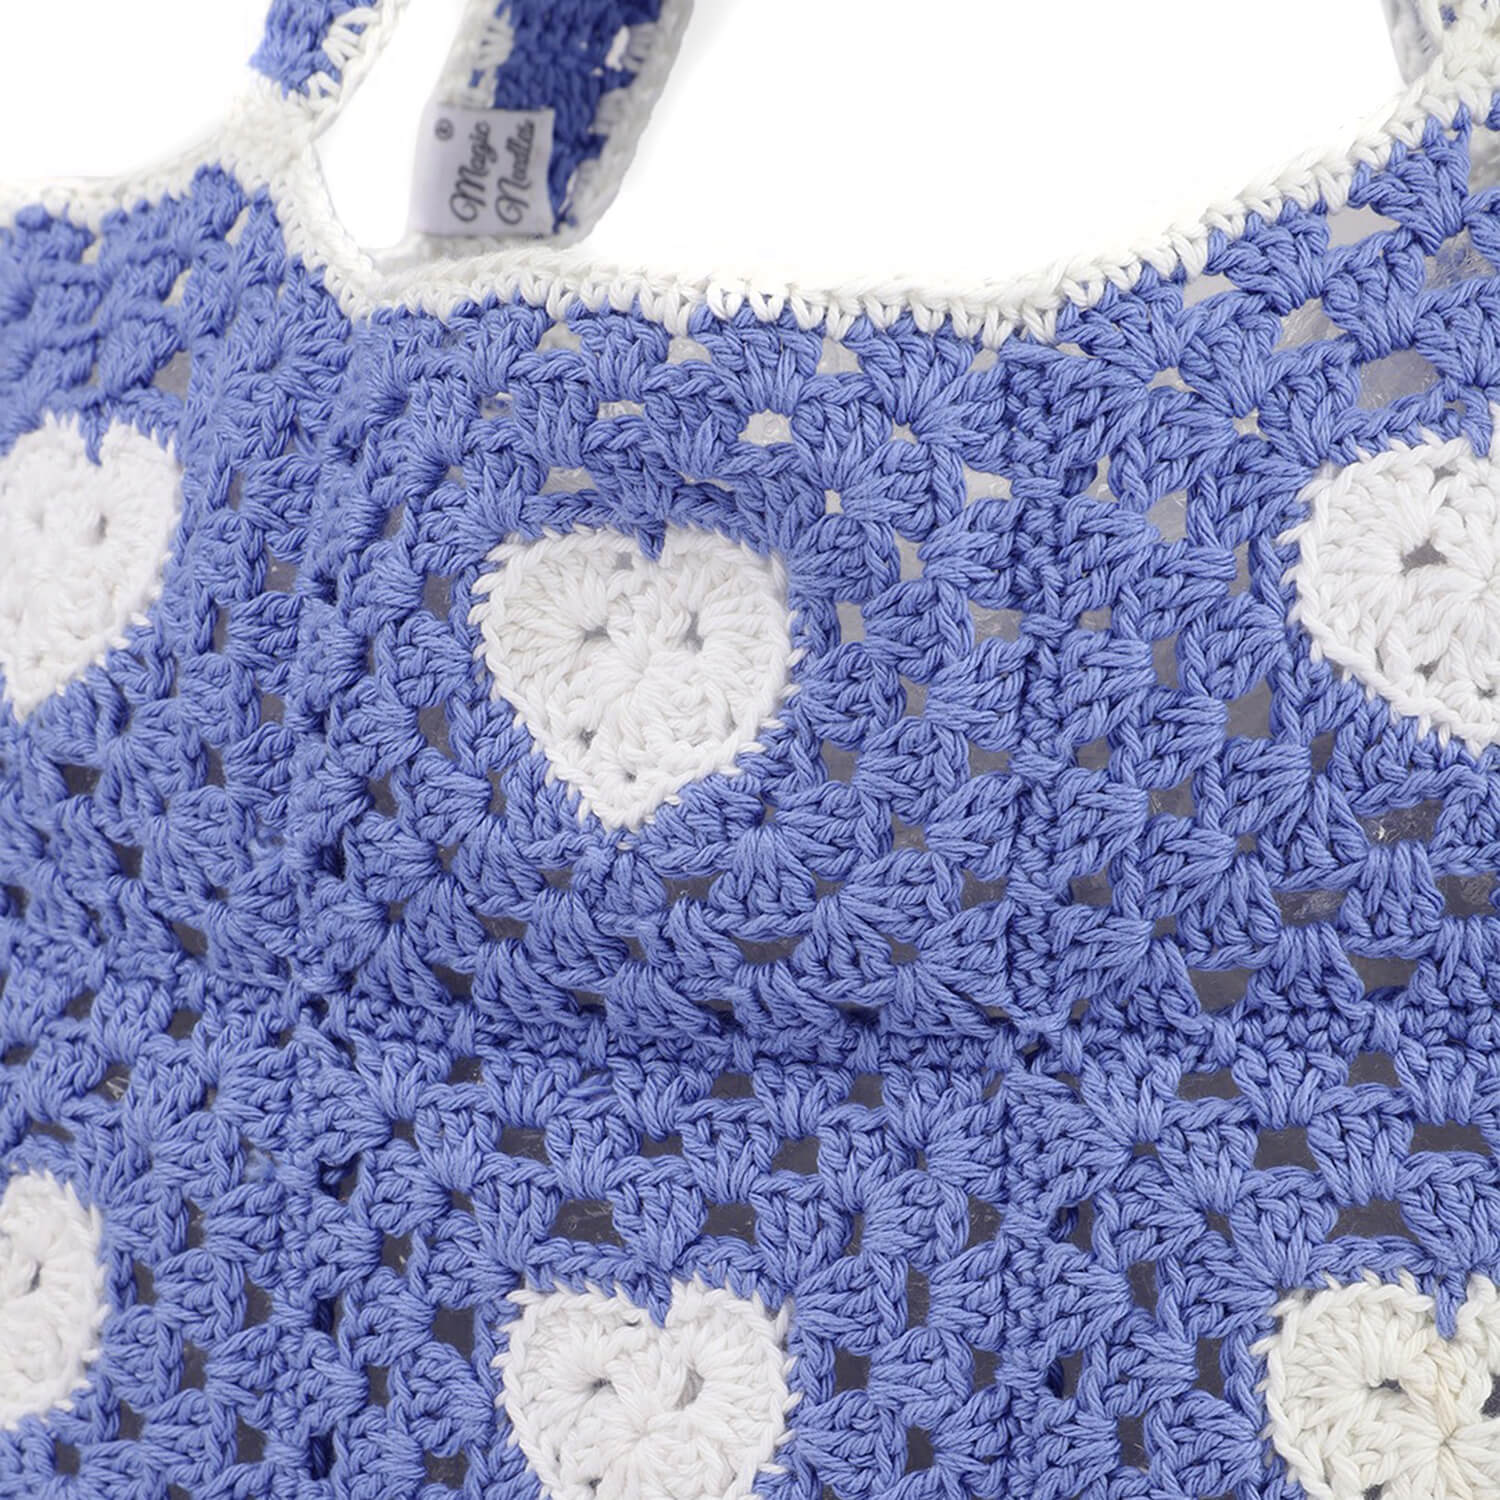 Handmade Crochet Market Bag - Blue, White 2812